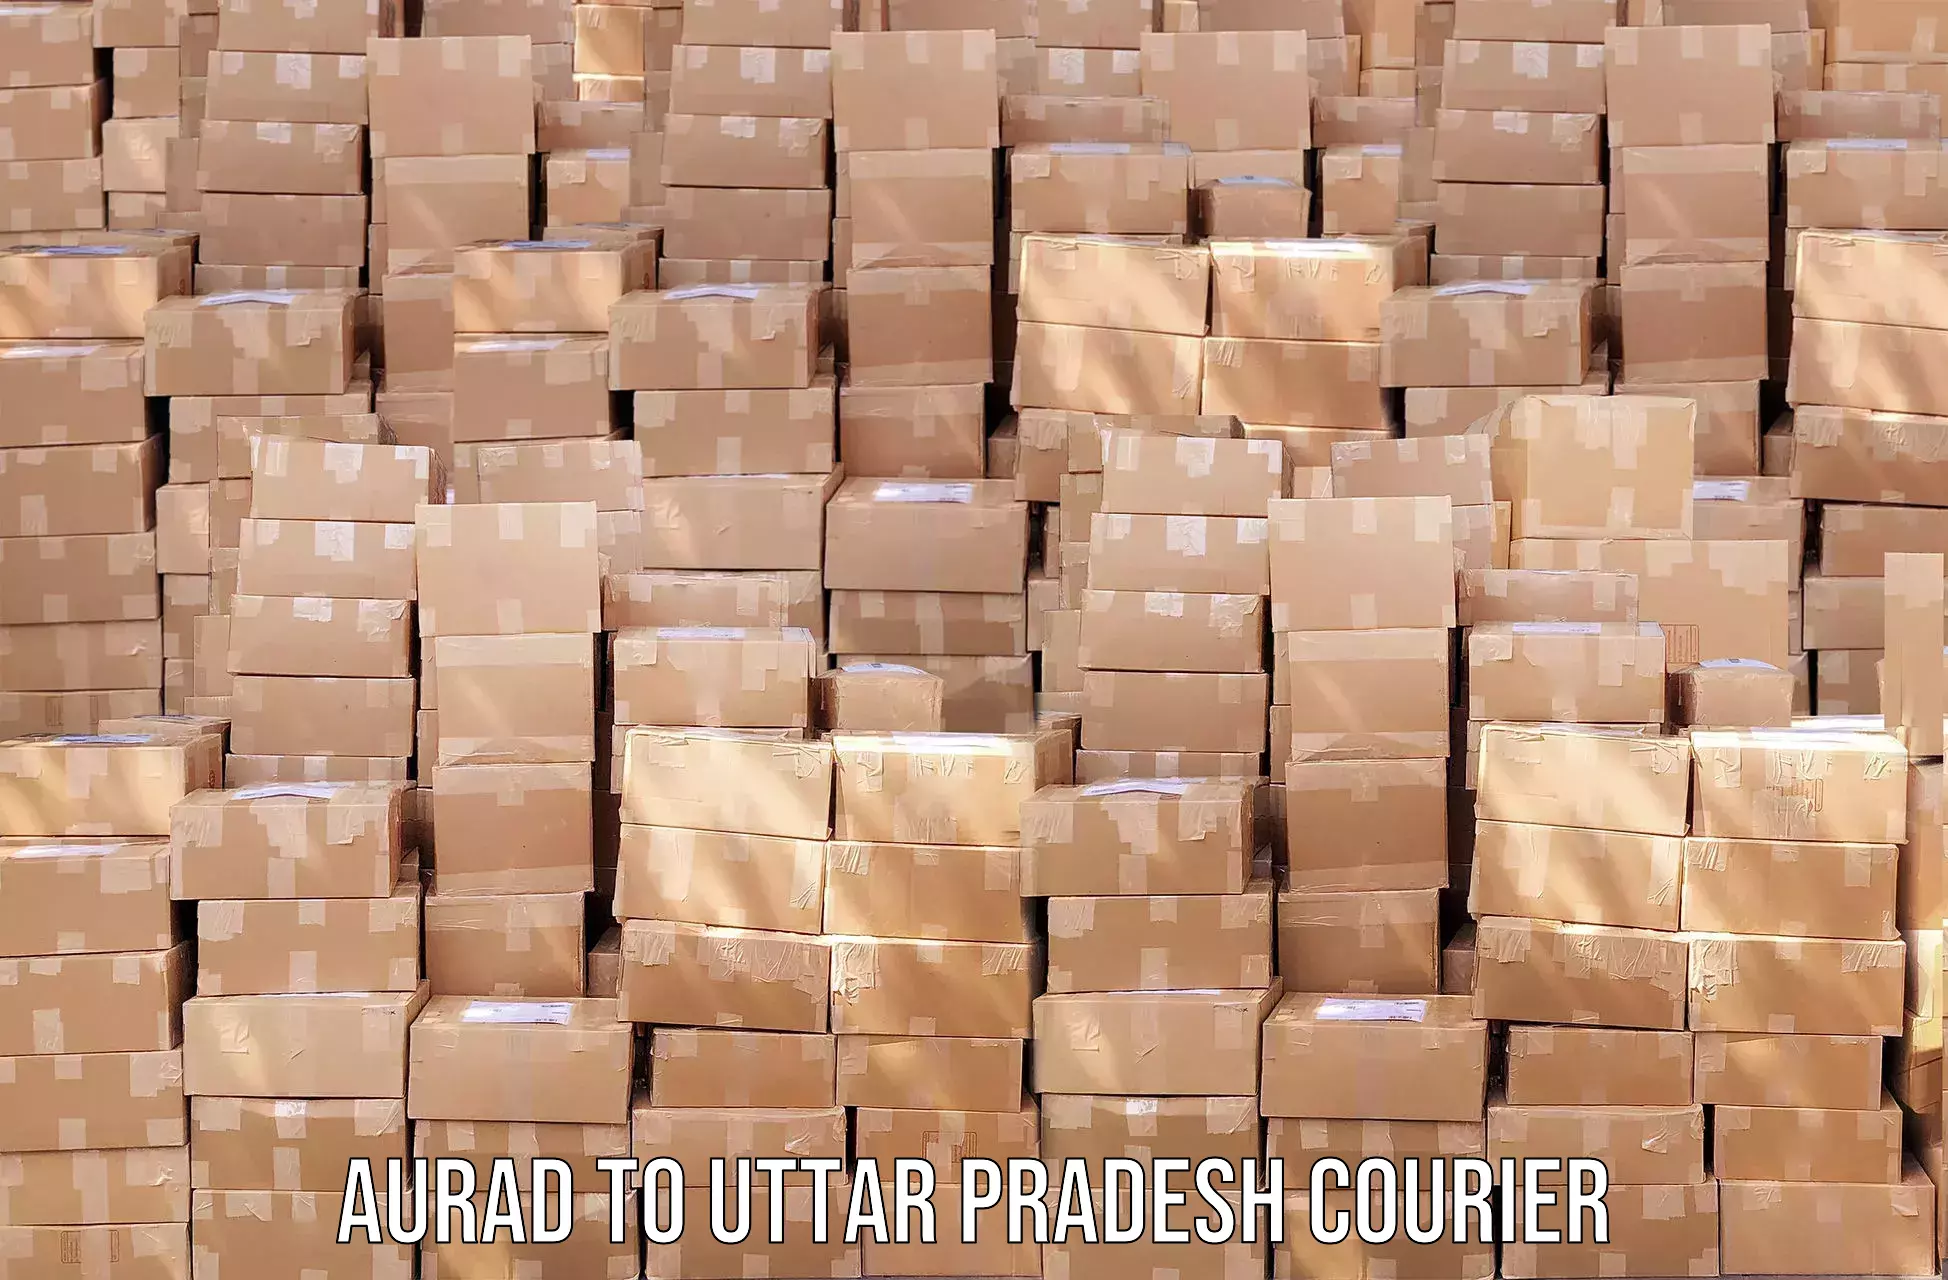 Return courier service Aurad to Faridpur